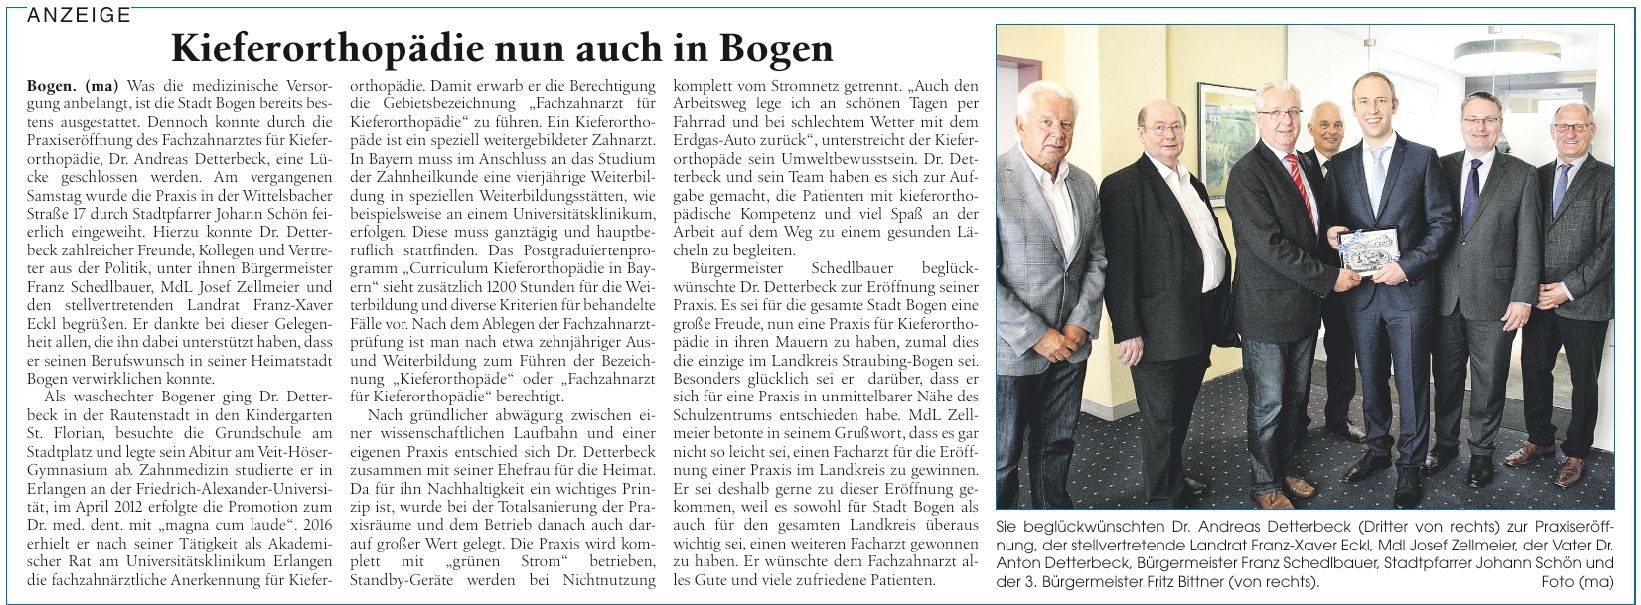 Quelle: Straubinger Tagblatt vom 03.06.2017